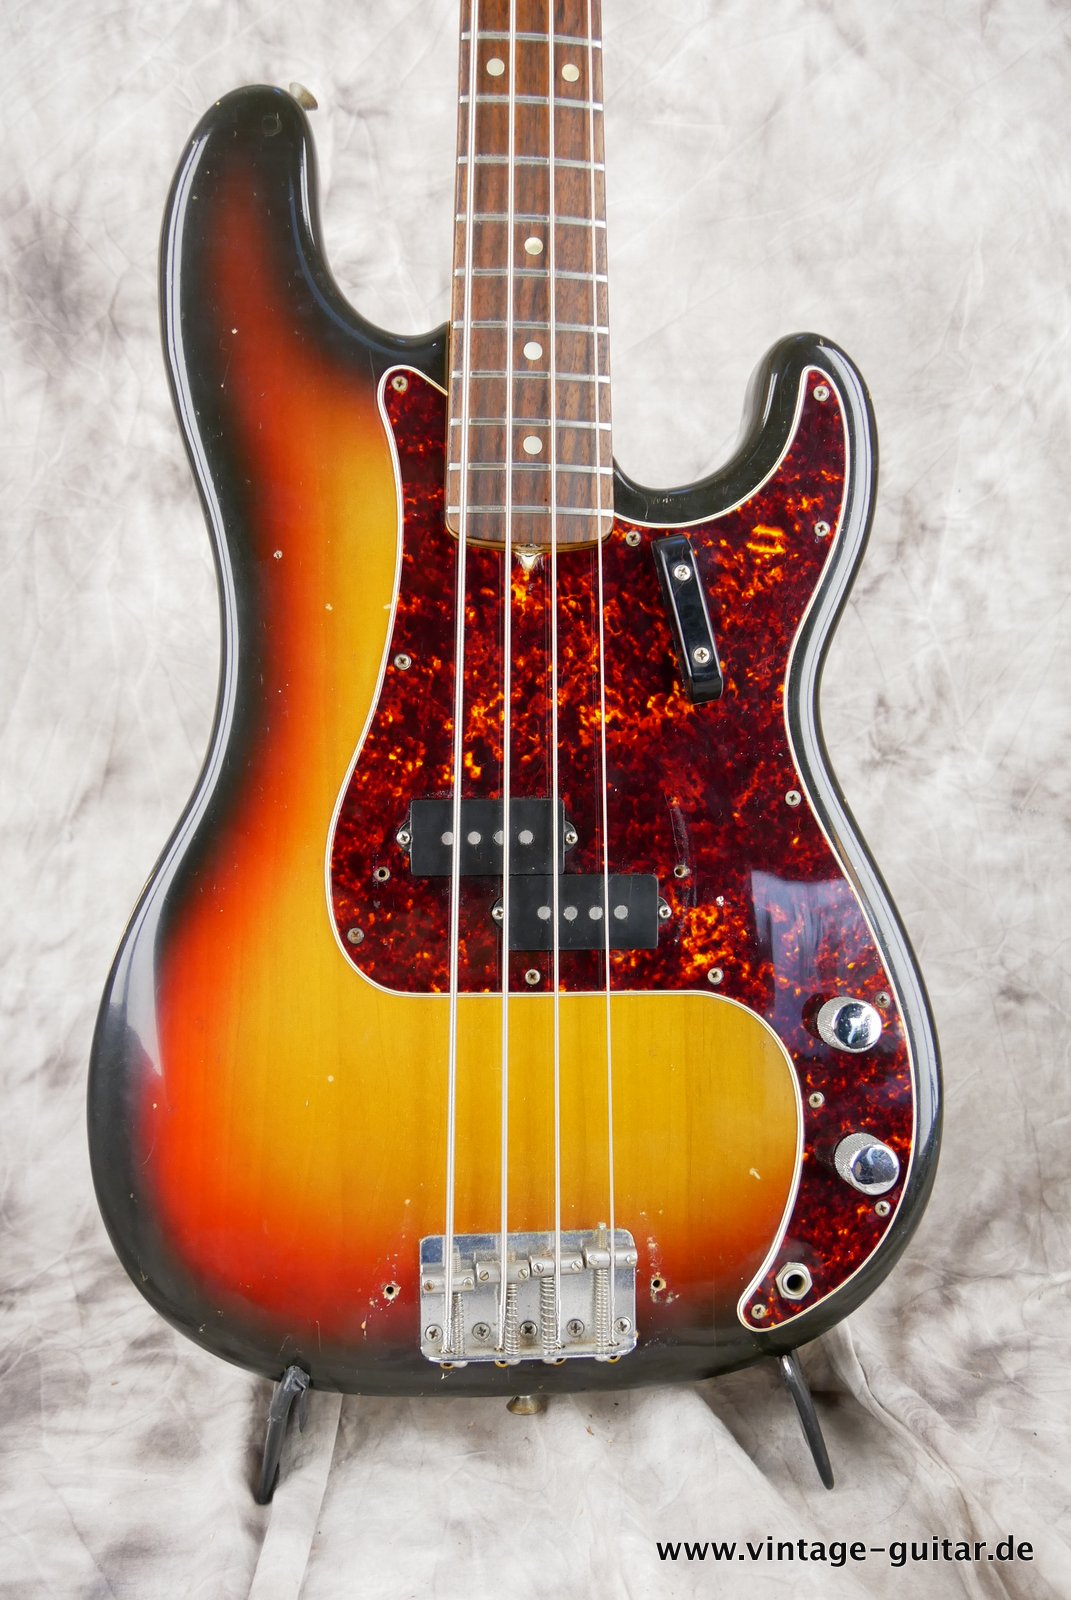 Fender-Precision-Bass-sunburst-1969-002.JPG